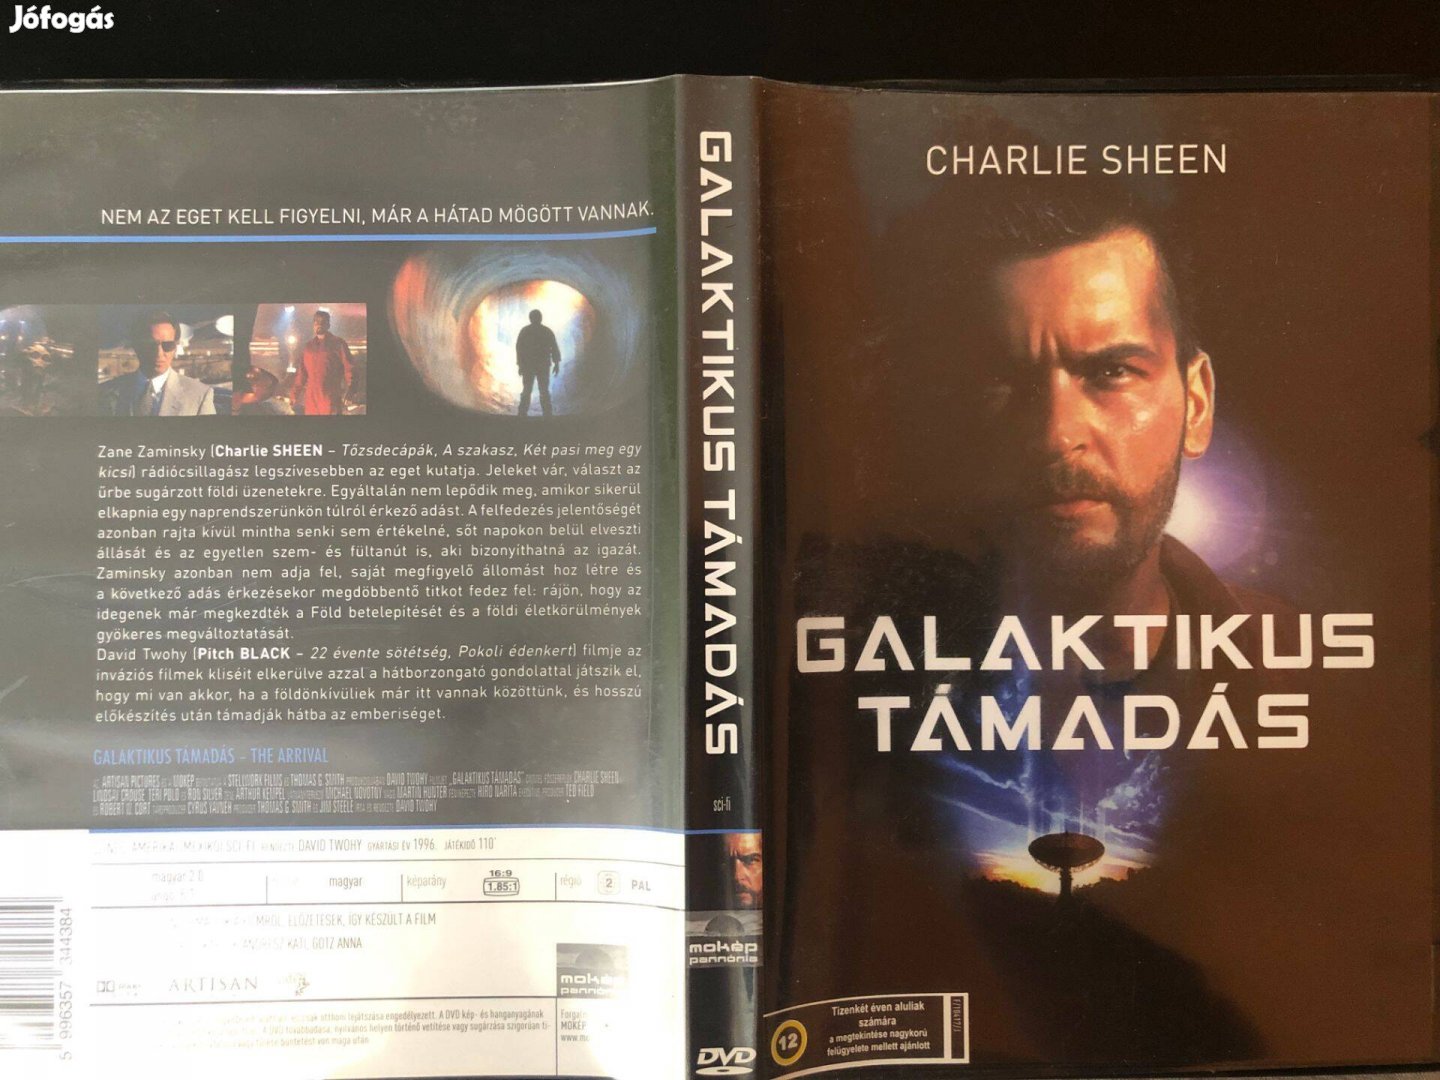 Galaktikus támadás (karcmentes, Charlie Sheen, MOKÉP kiadás) DVD